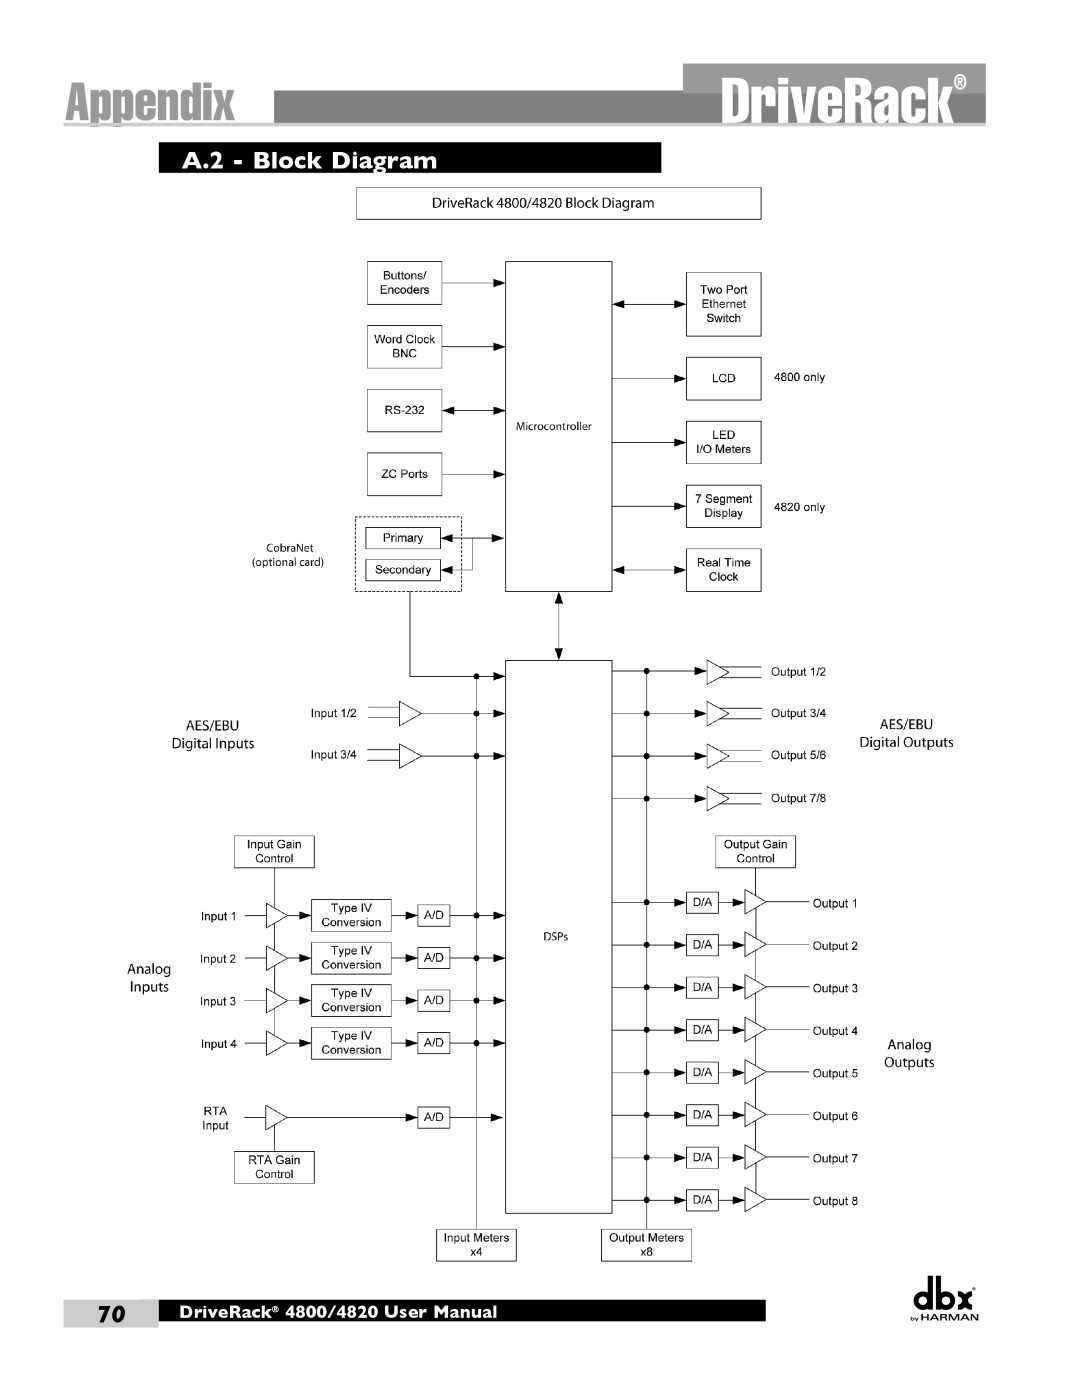 Harman user manual A.2 - Block Diagram, AppendixDriveRack, DriveRack 4800/4820 User Manual 